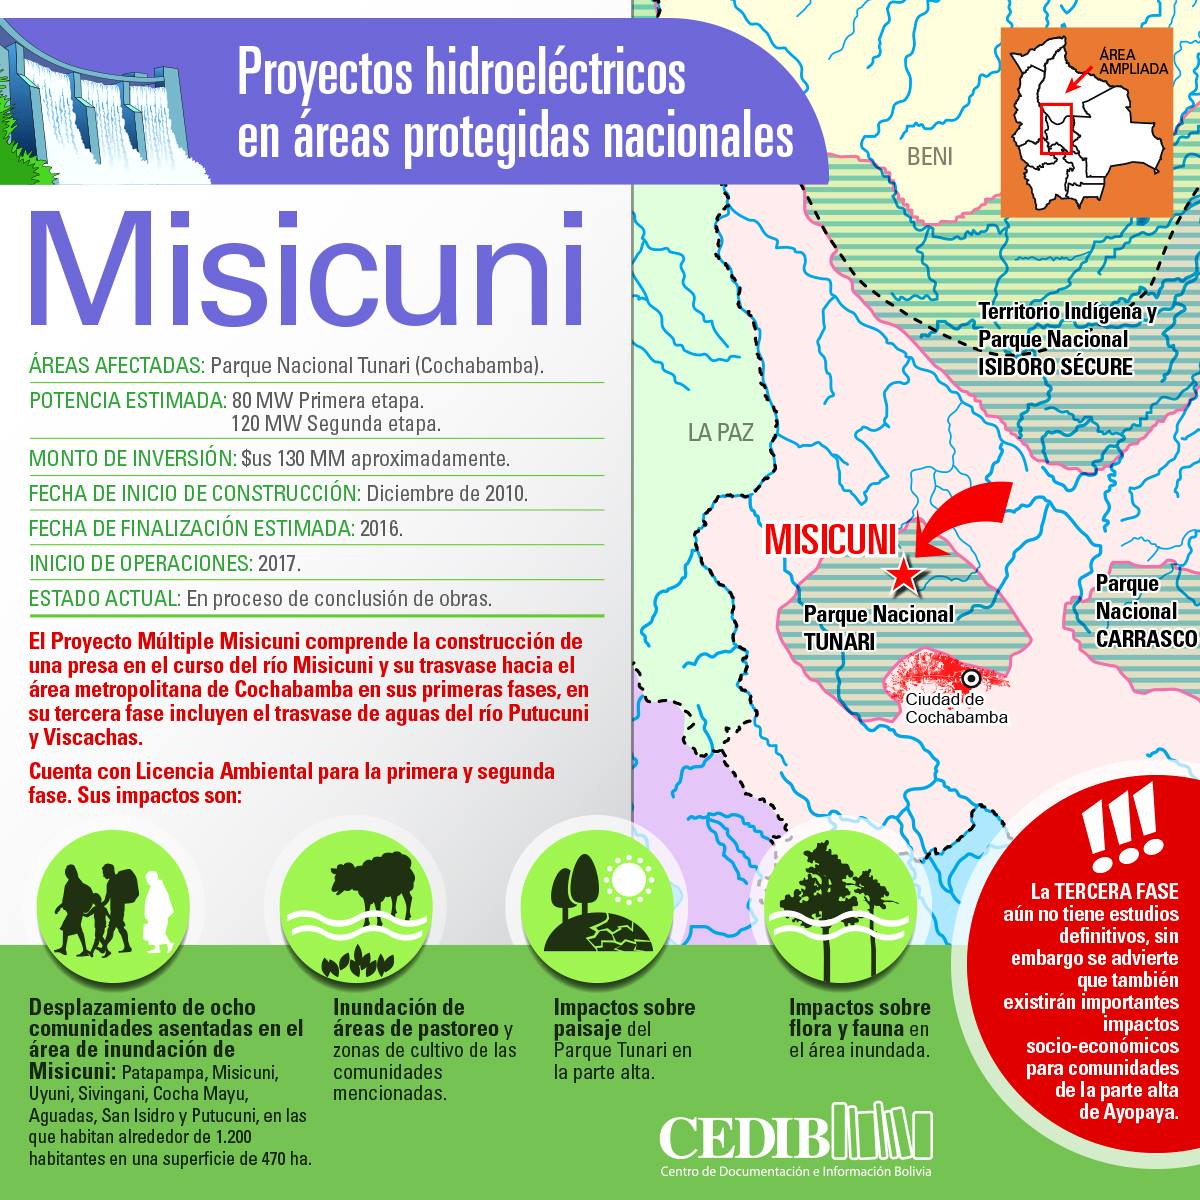 Misicuni: Proyectos hidroeléctricos en áreas protegidas de Bolivia